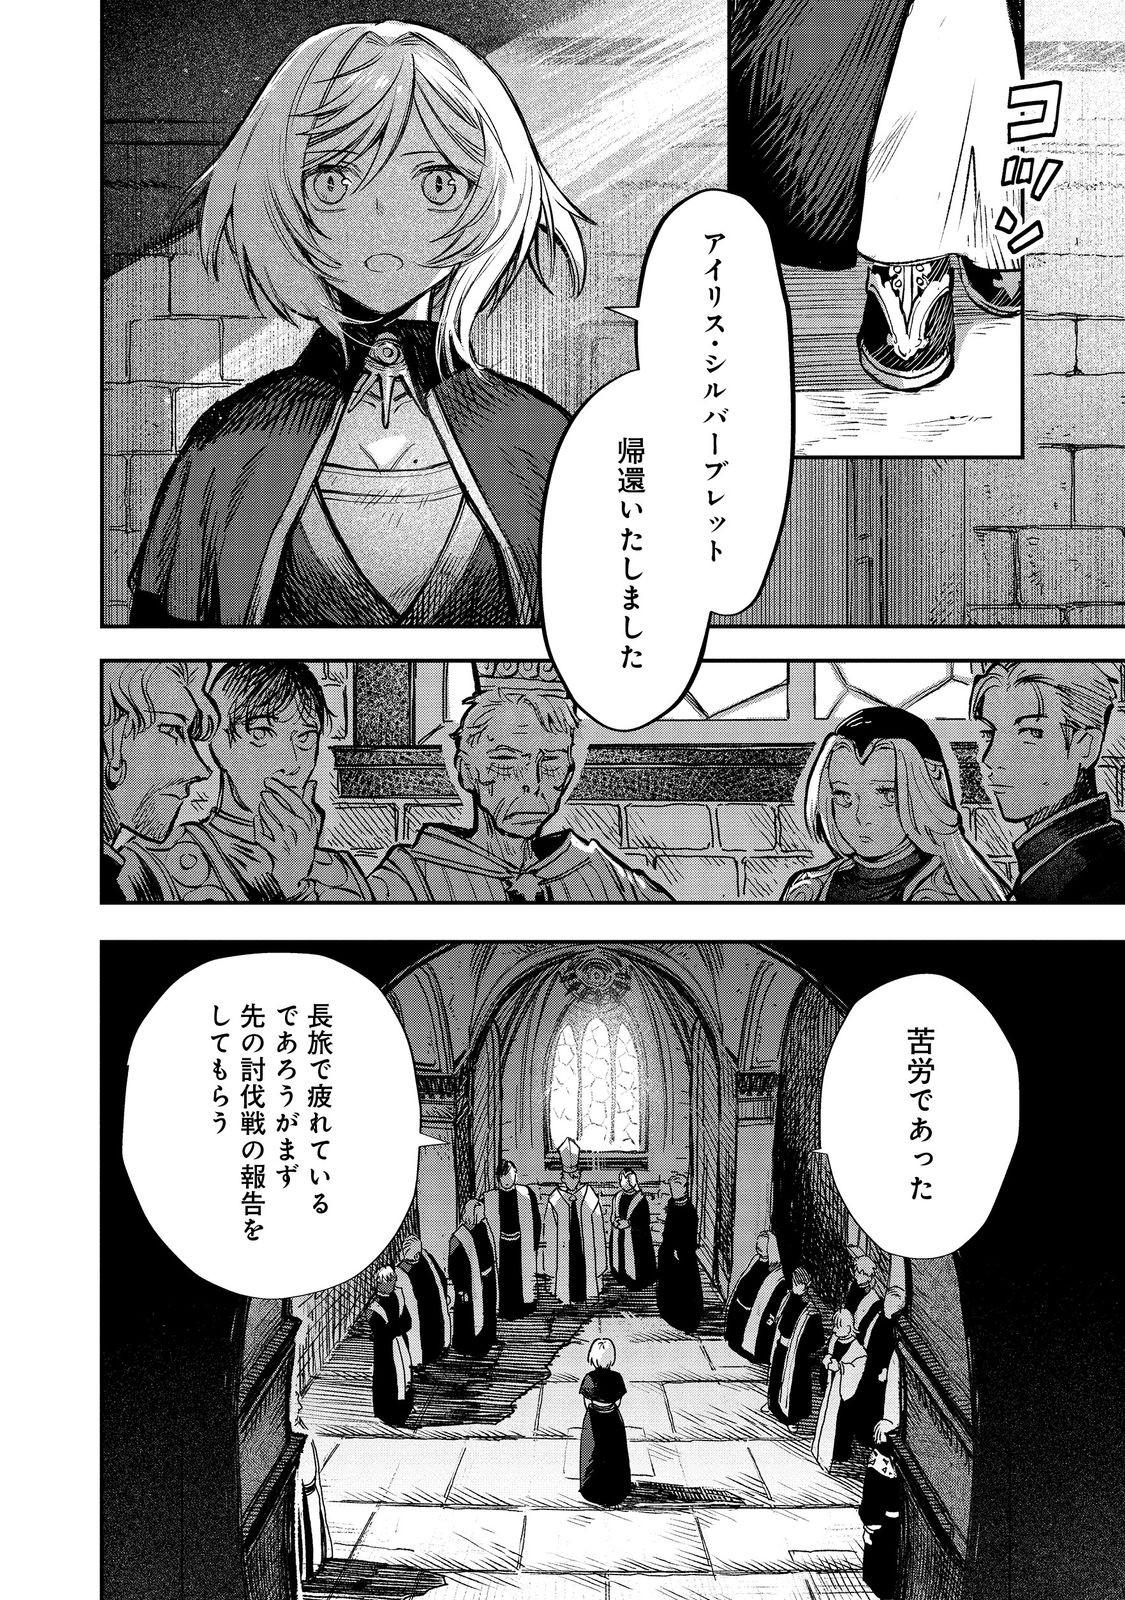 Meiou-sama ga Tooru no desu yo! - Chapter 13 - Page 2